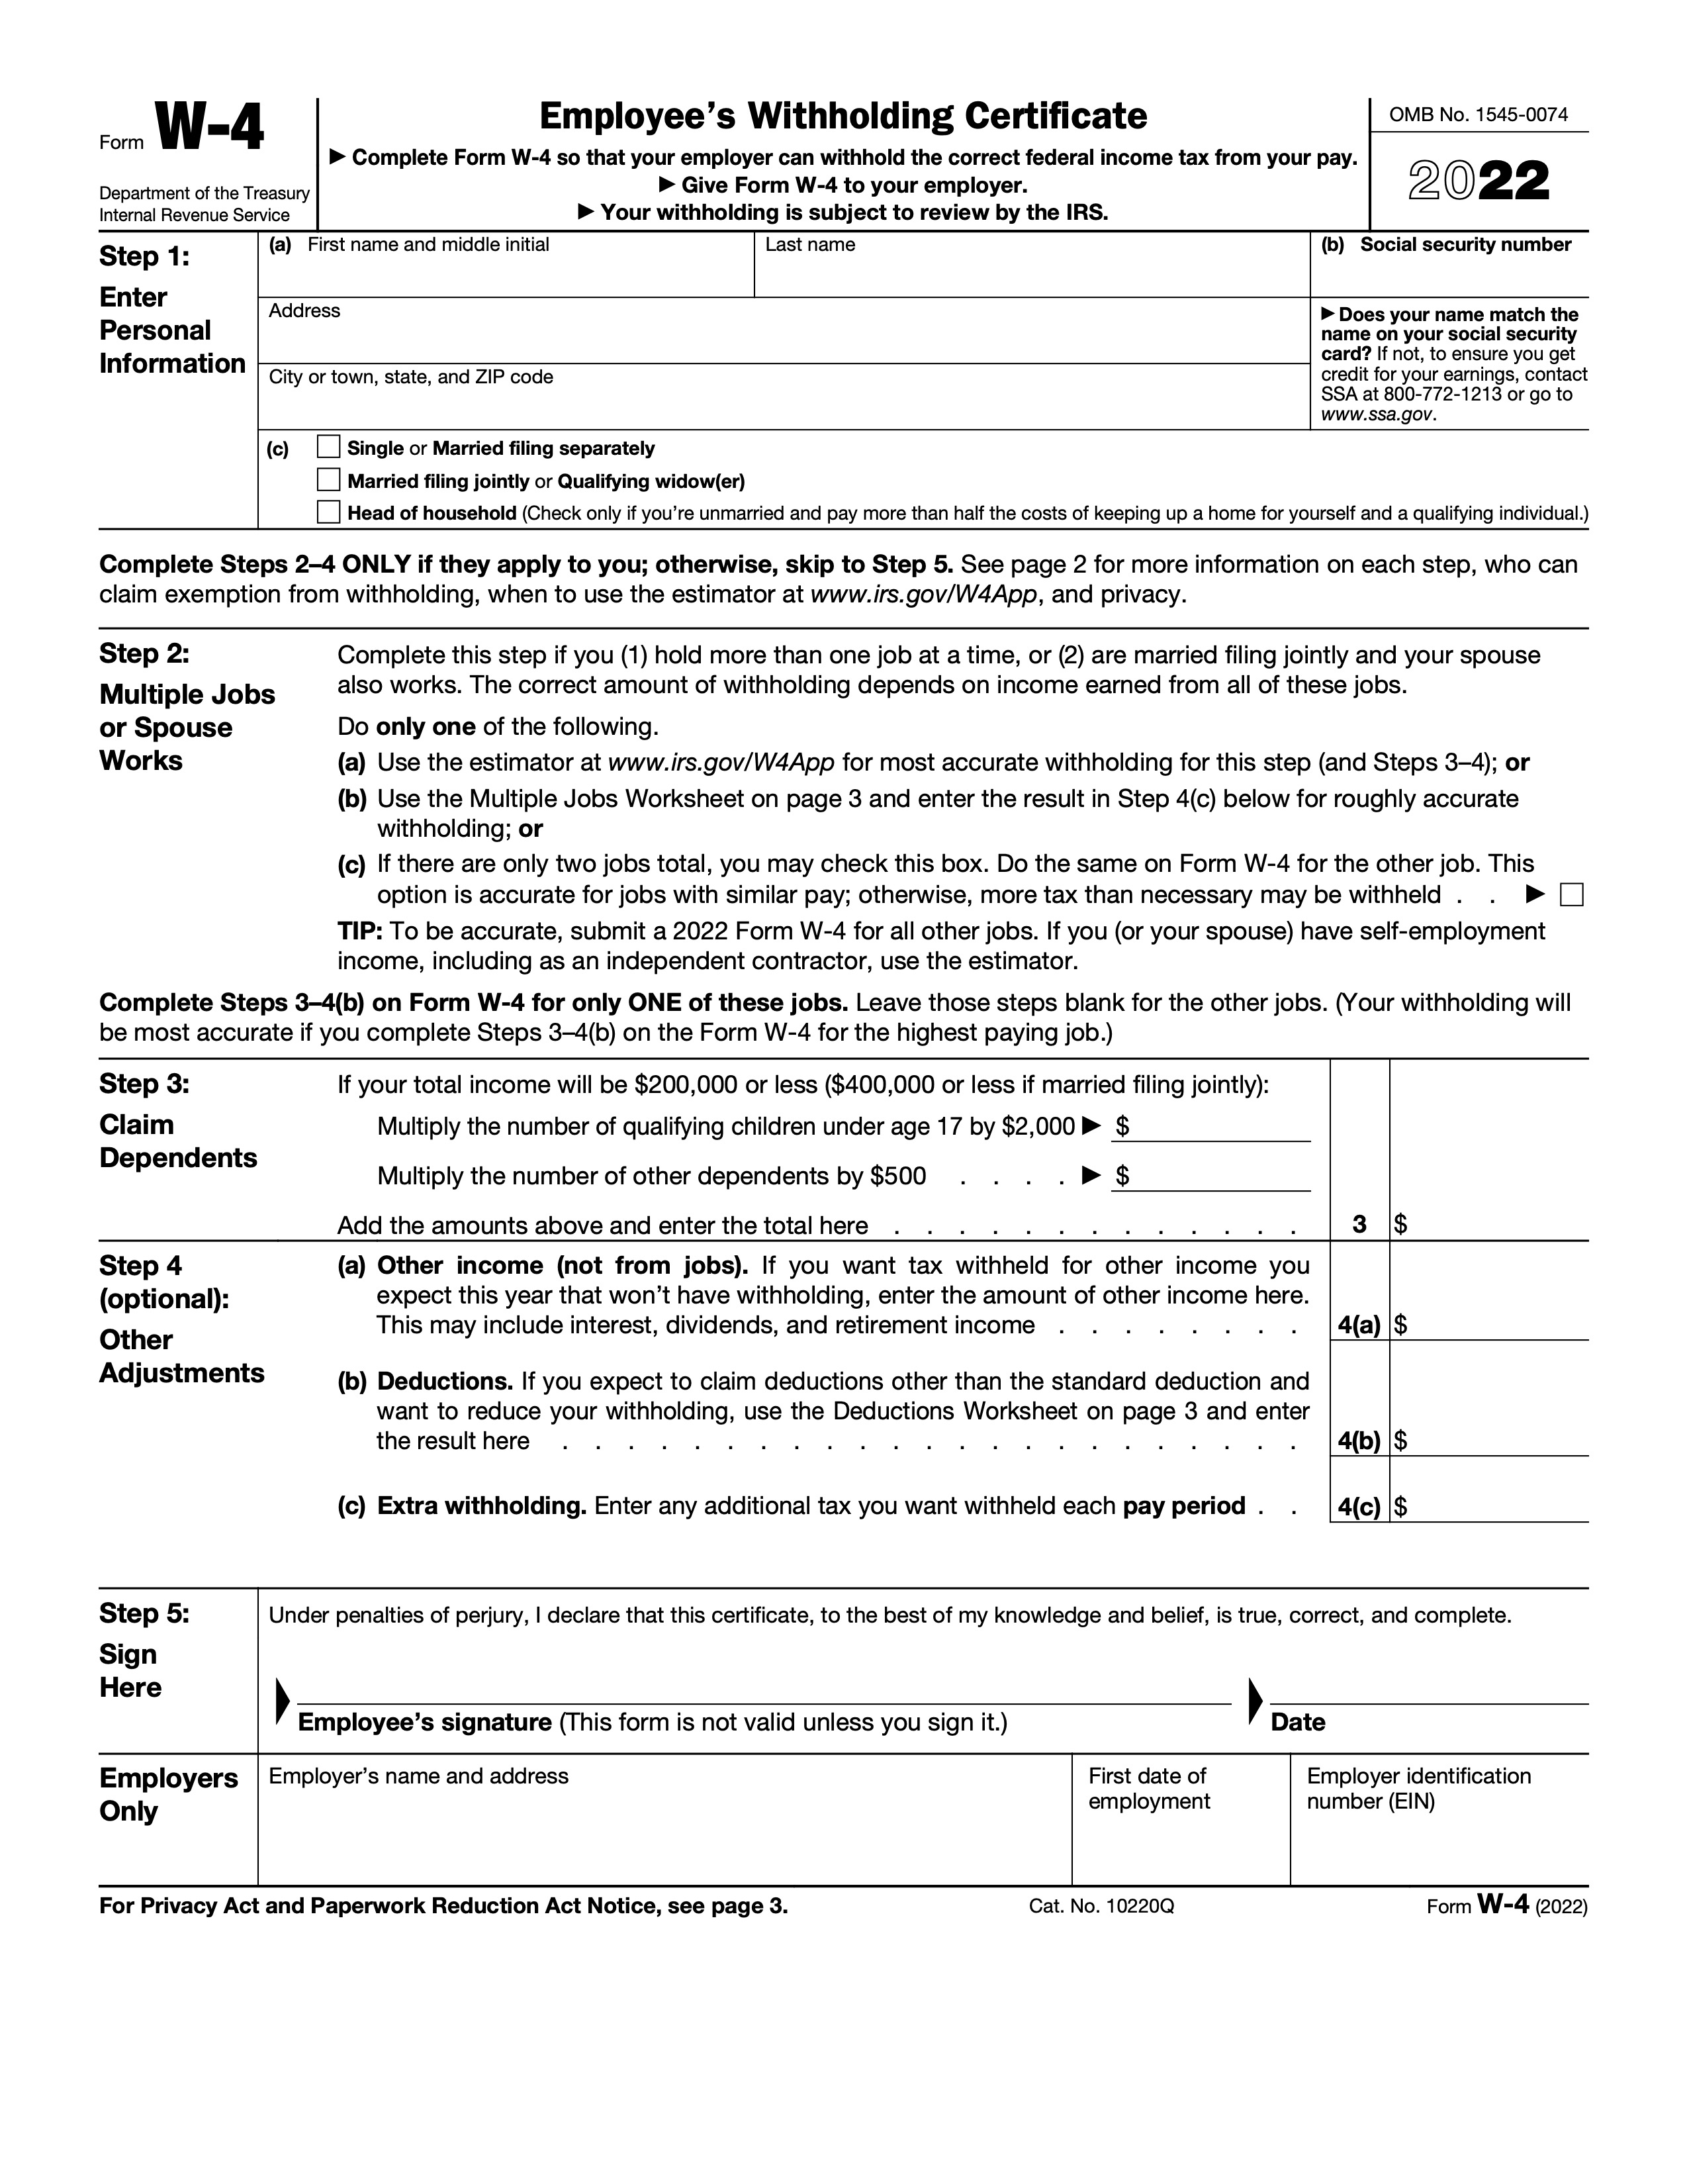 IRS W-4 Form